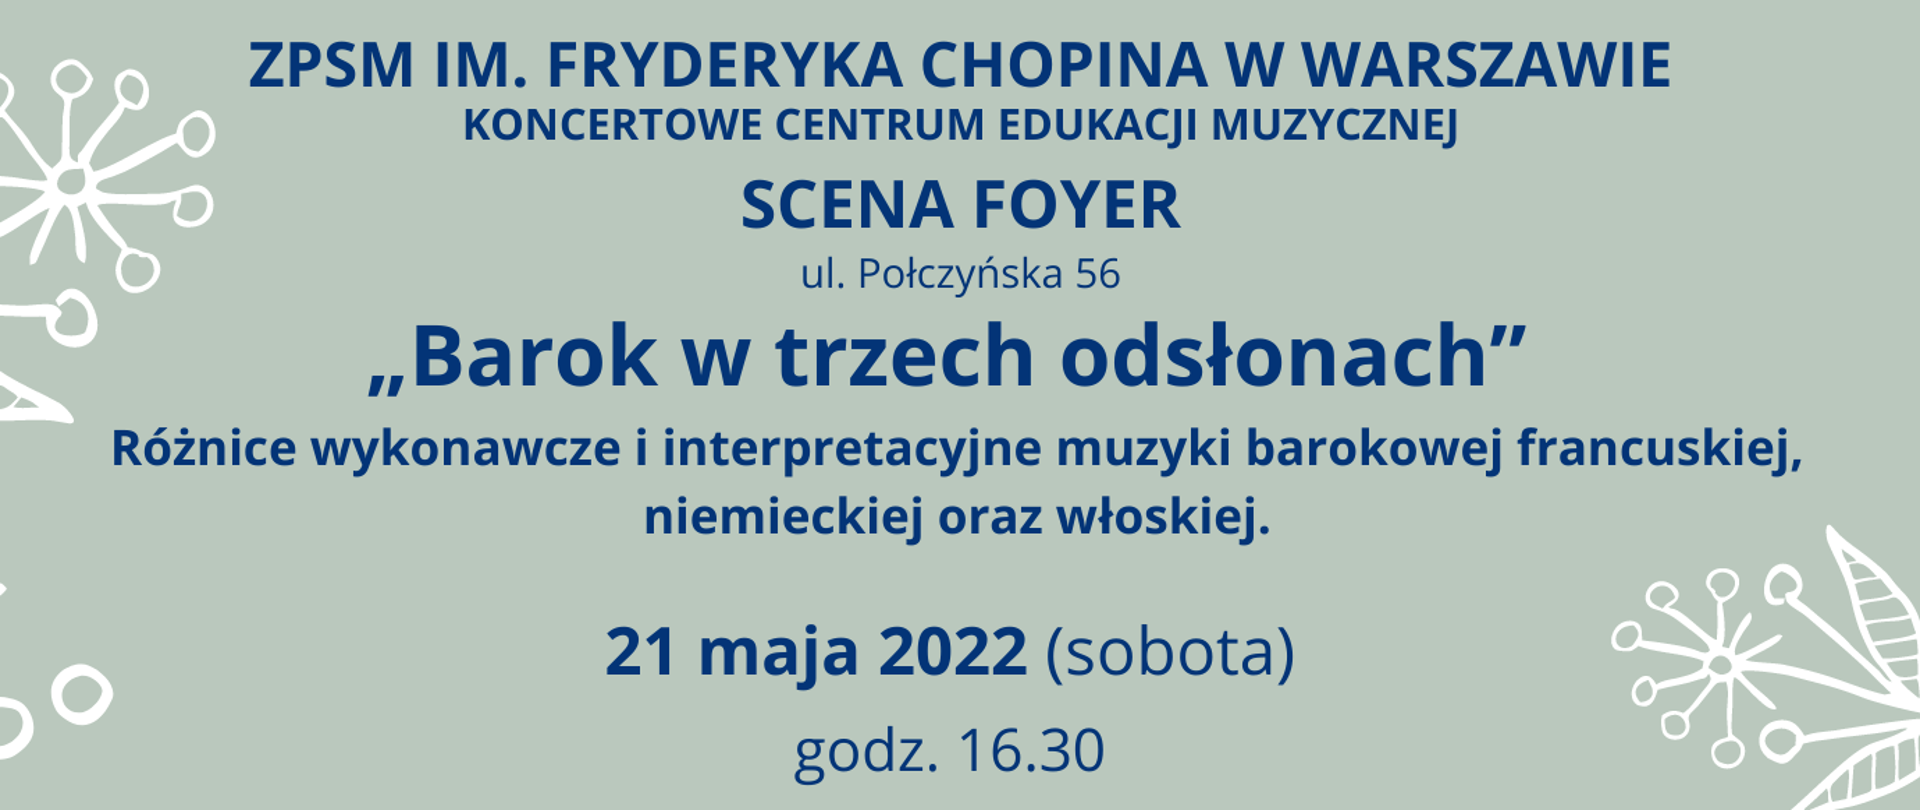 Grafika, szare tło z napisem "ZPSM im. Fryderyka Chopina w Warszawie, KONCERTOWE CENTRUM EDUKACJI MUZYCZNEJ, SCENA FOYER, ul. Połczyńska 56, 'Barok w trzech odsłonach' - wykład i koncert, 21 maja 2022, godz 16.30"